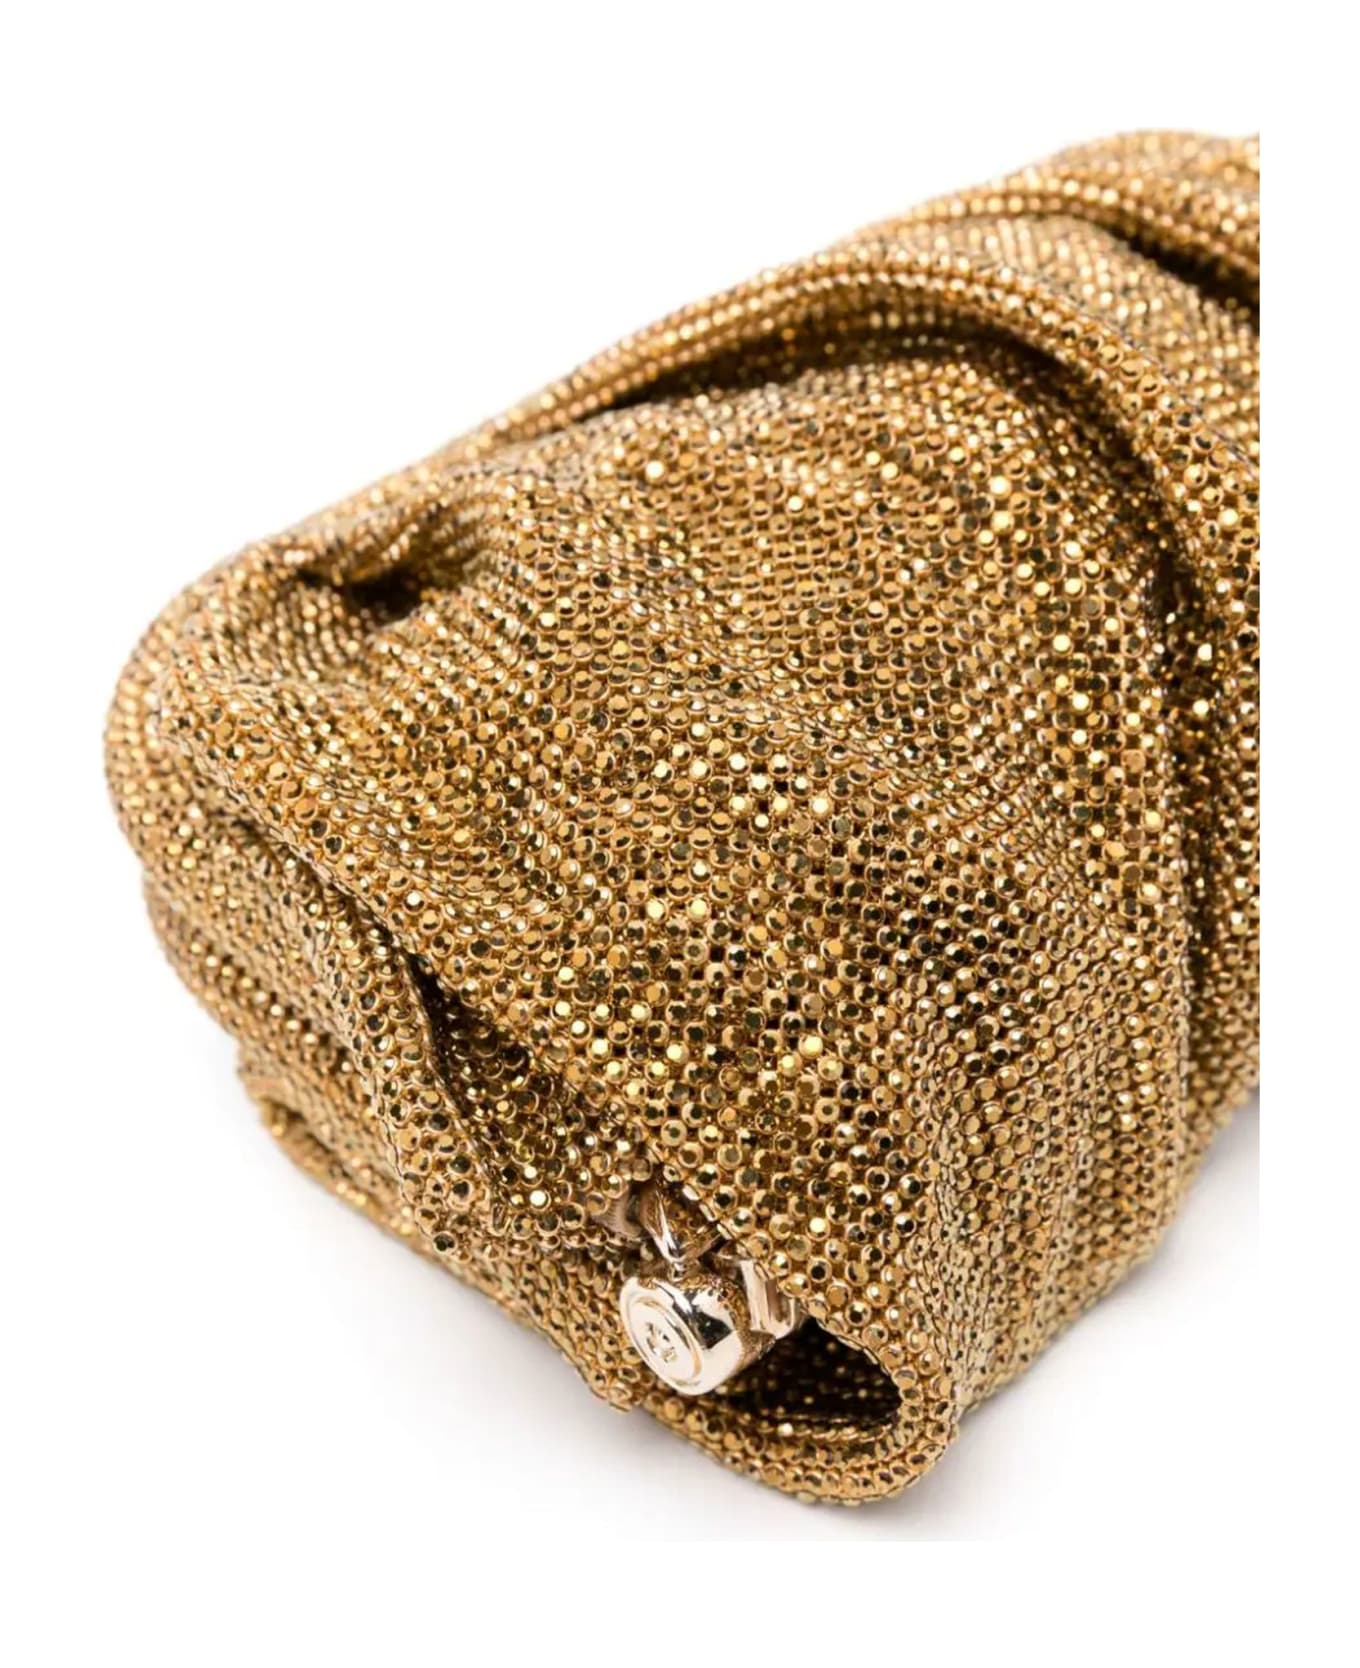 Benedetta Bruzziches Gold-tone Venus Petite Crystal Clutch Bag - Golden